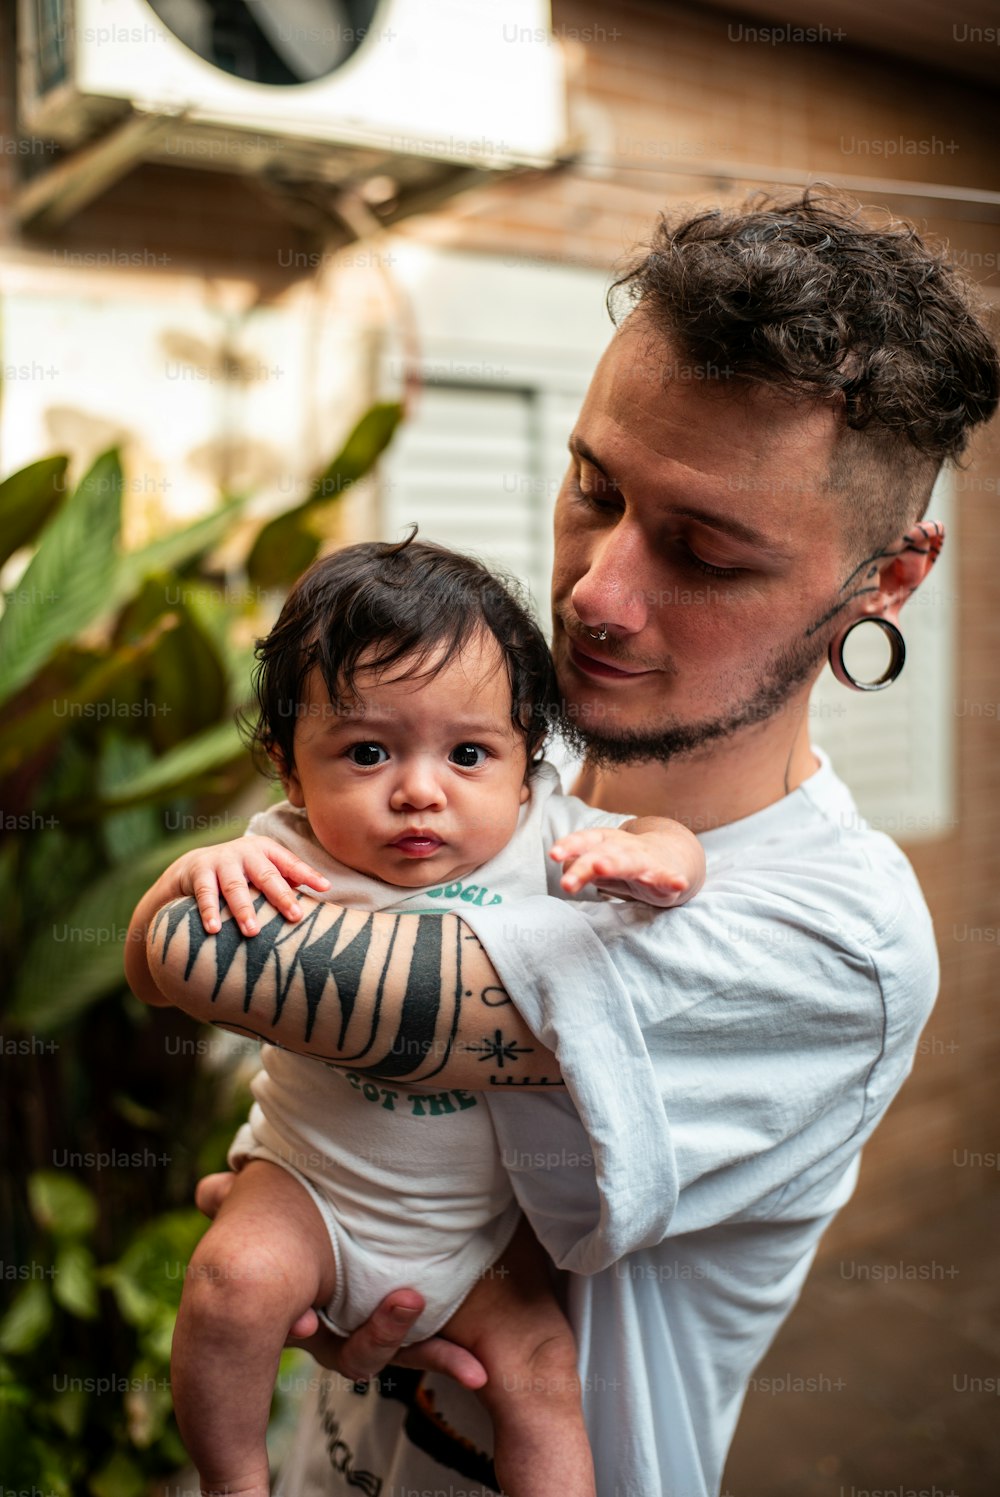 Un hombre sosteniendo a un bebé con un tatuaje en el brazo